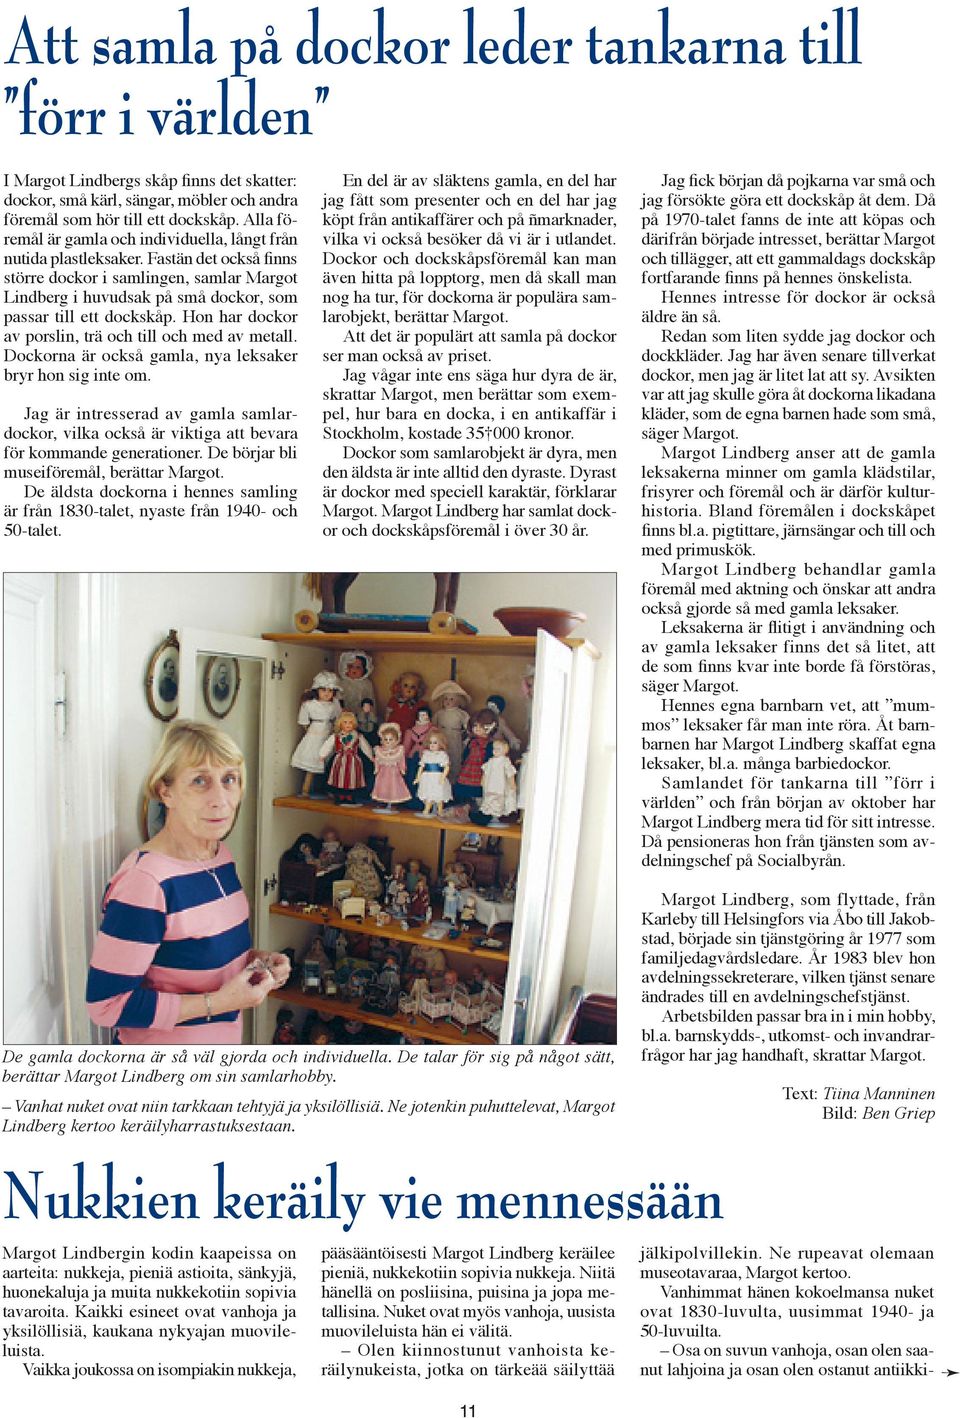 Fastän det också finns större dockor i samlingen, samlar Margot Lindberg i huvudsak på små dockor, som passar till ett dockskåp. Hon har dockor av porslin, trä och till och med av metall.